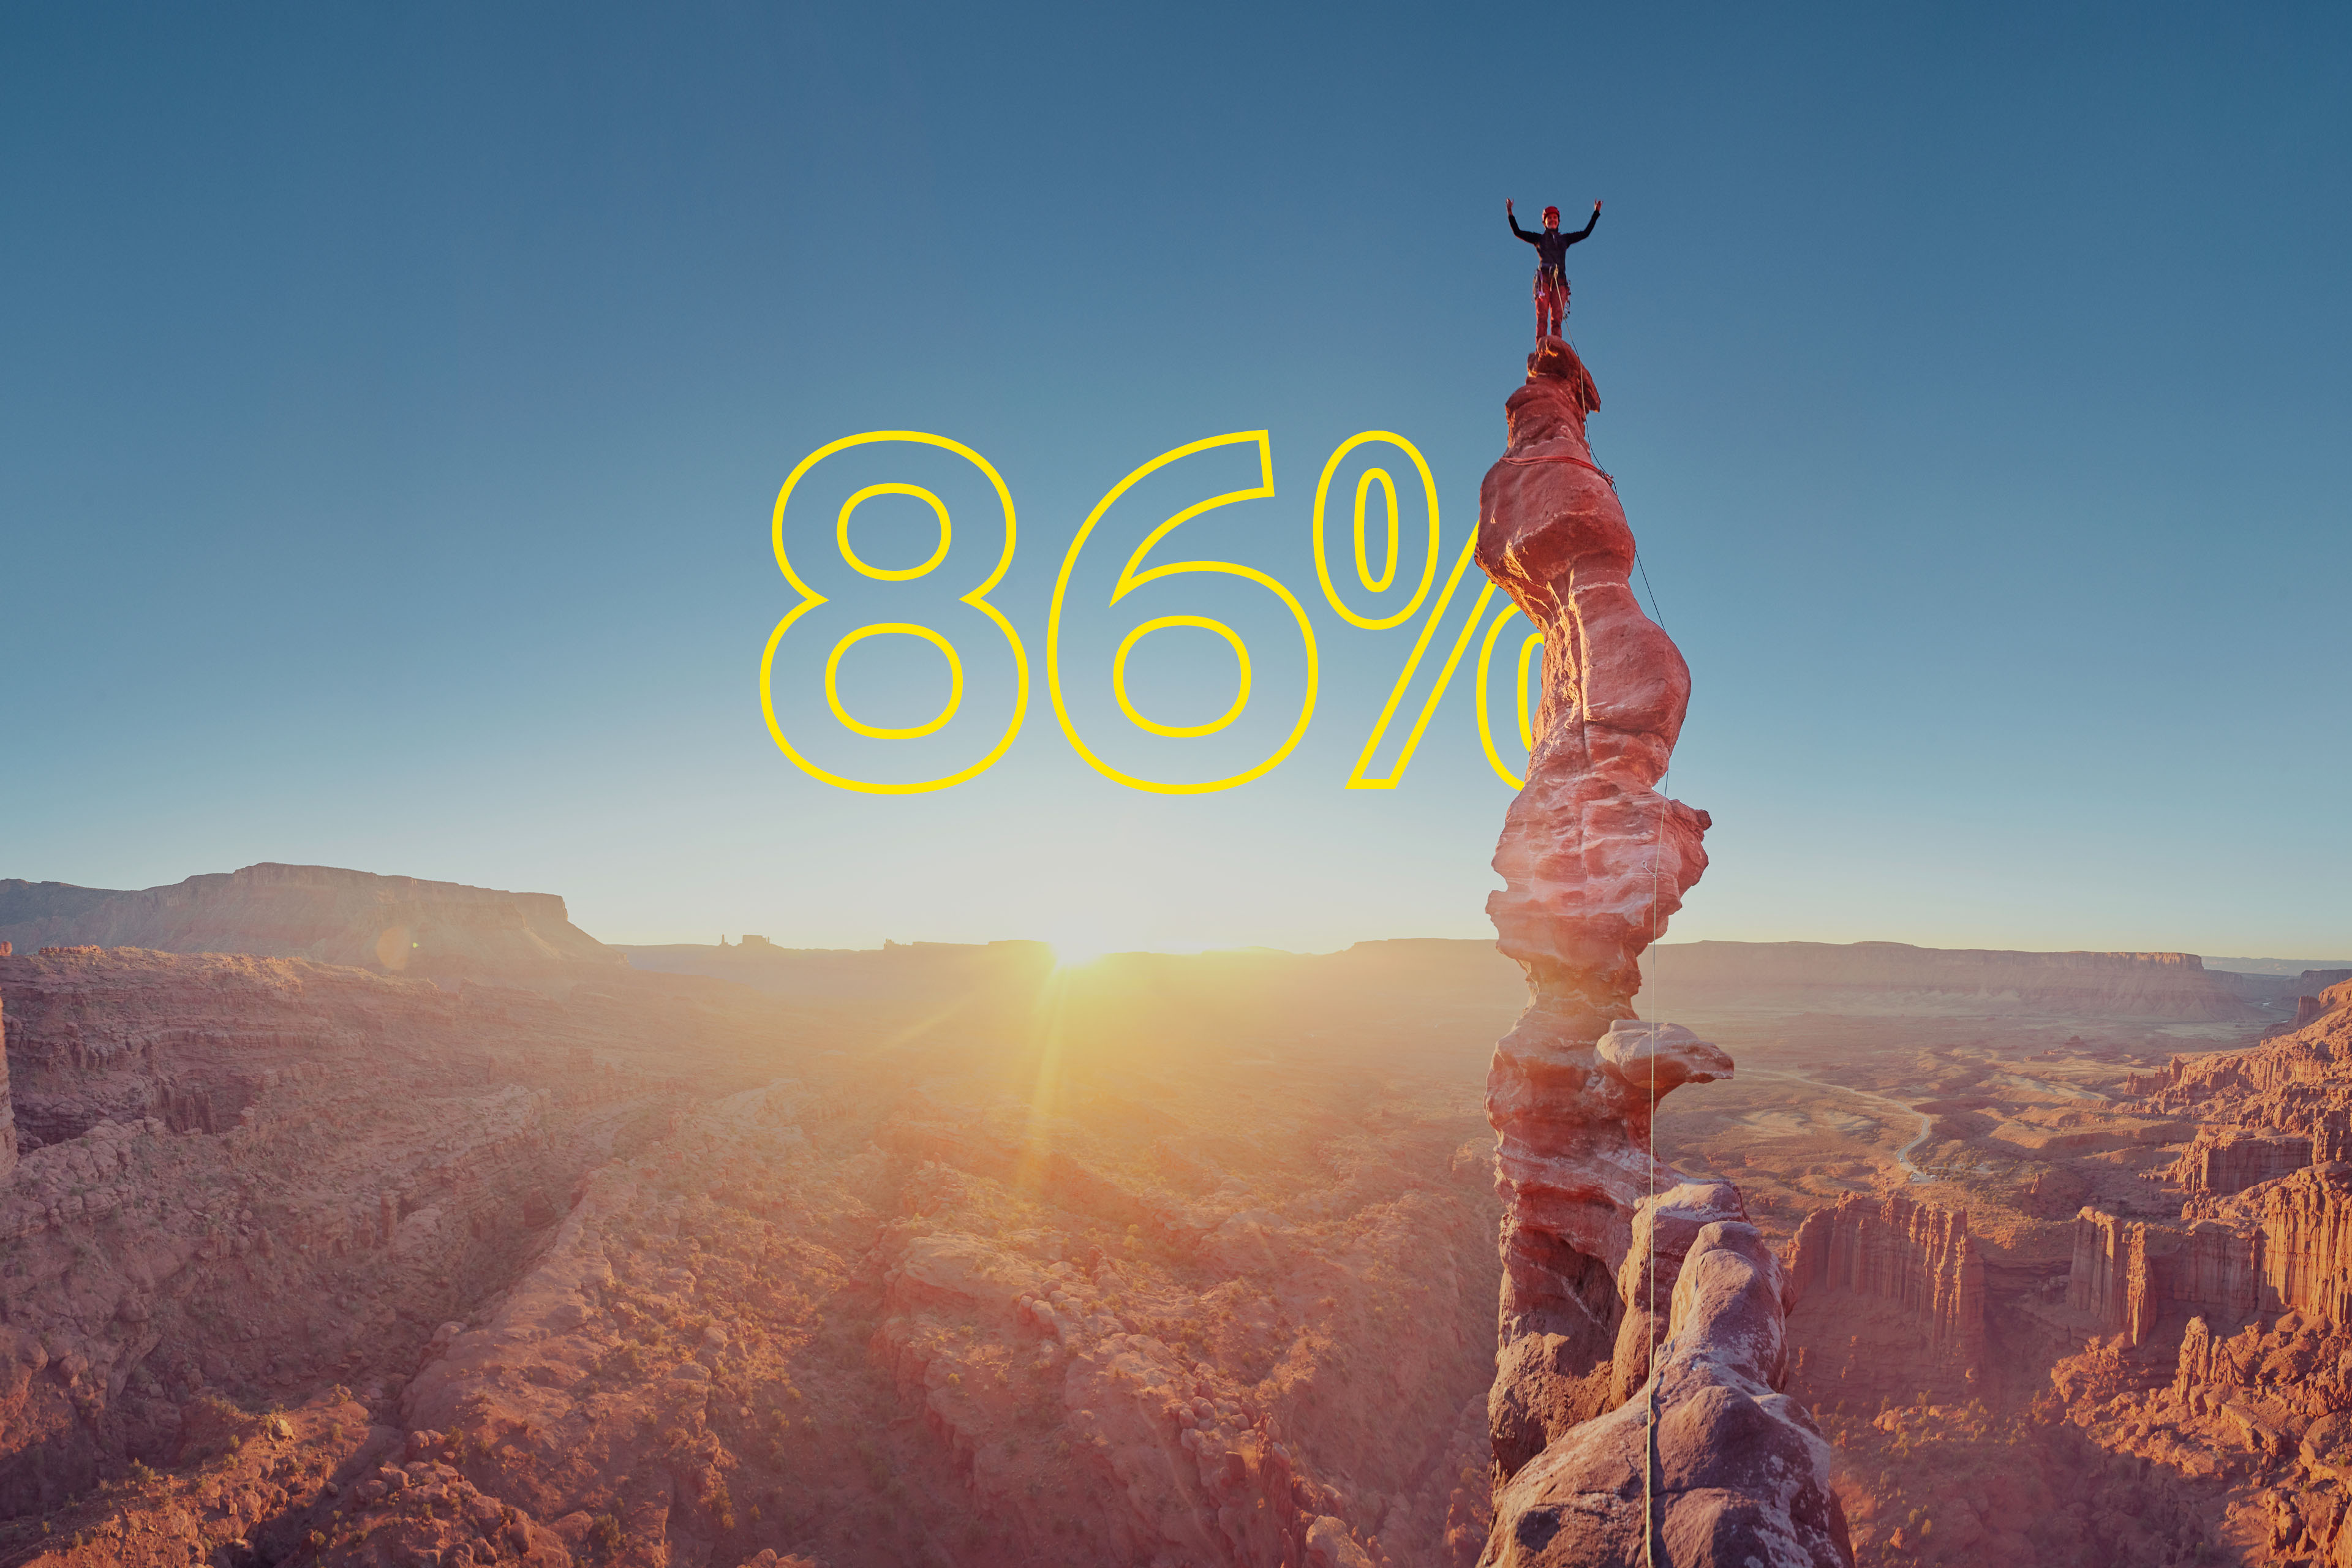 Alpinista comemorando no topo da escalada ao pôr do sol em Moab, EUA – texto amarelo sobreposto dizendo 86%